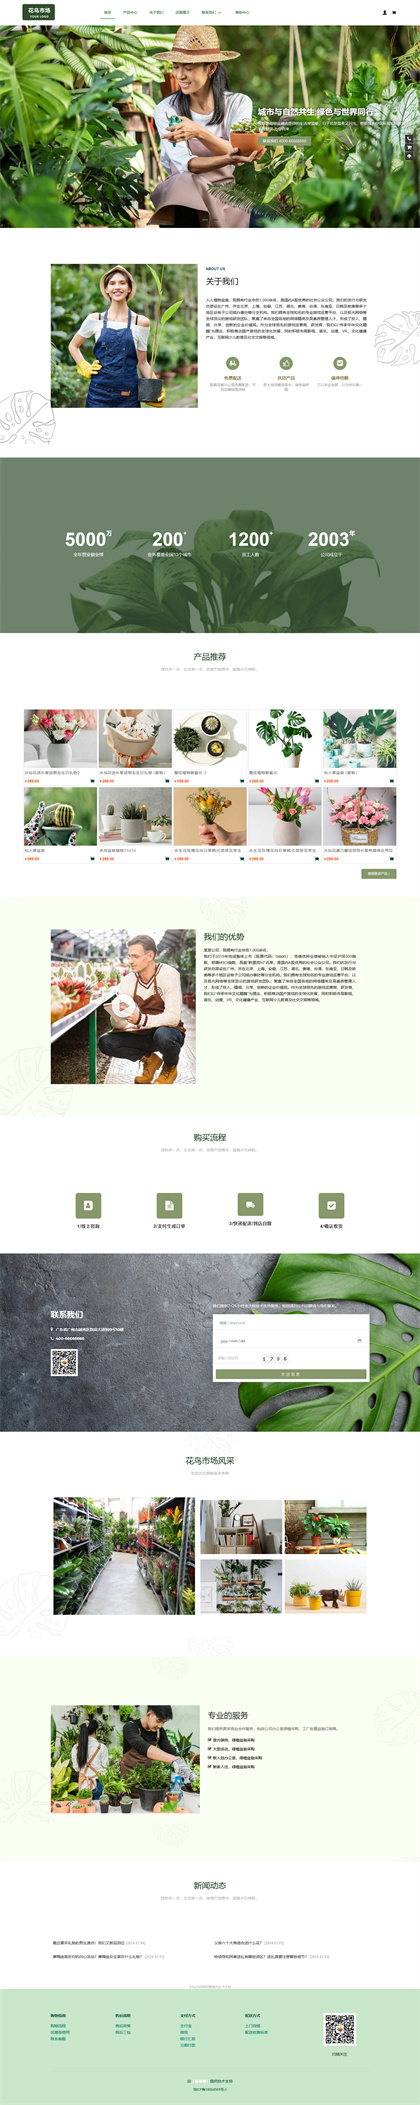 花草鱼虫市场商城网站模板-植物盆栽商城网站模板-绿植商城网站模板网站模板图片